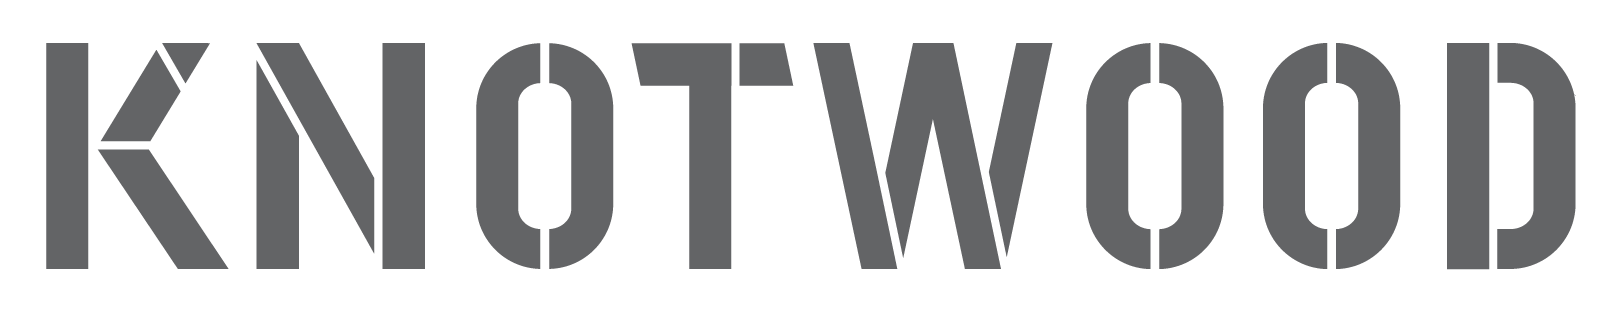 knotwood logo